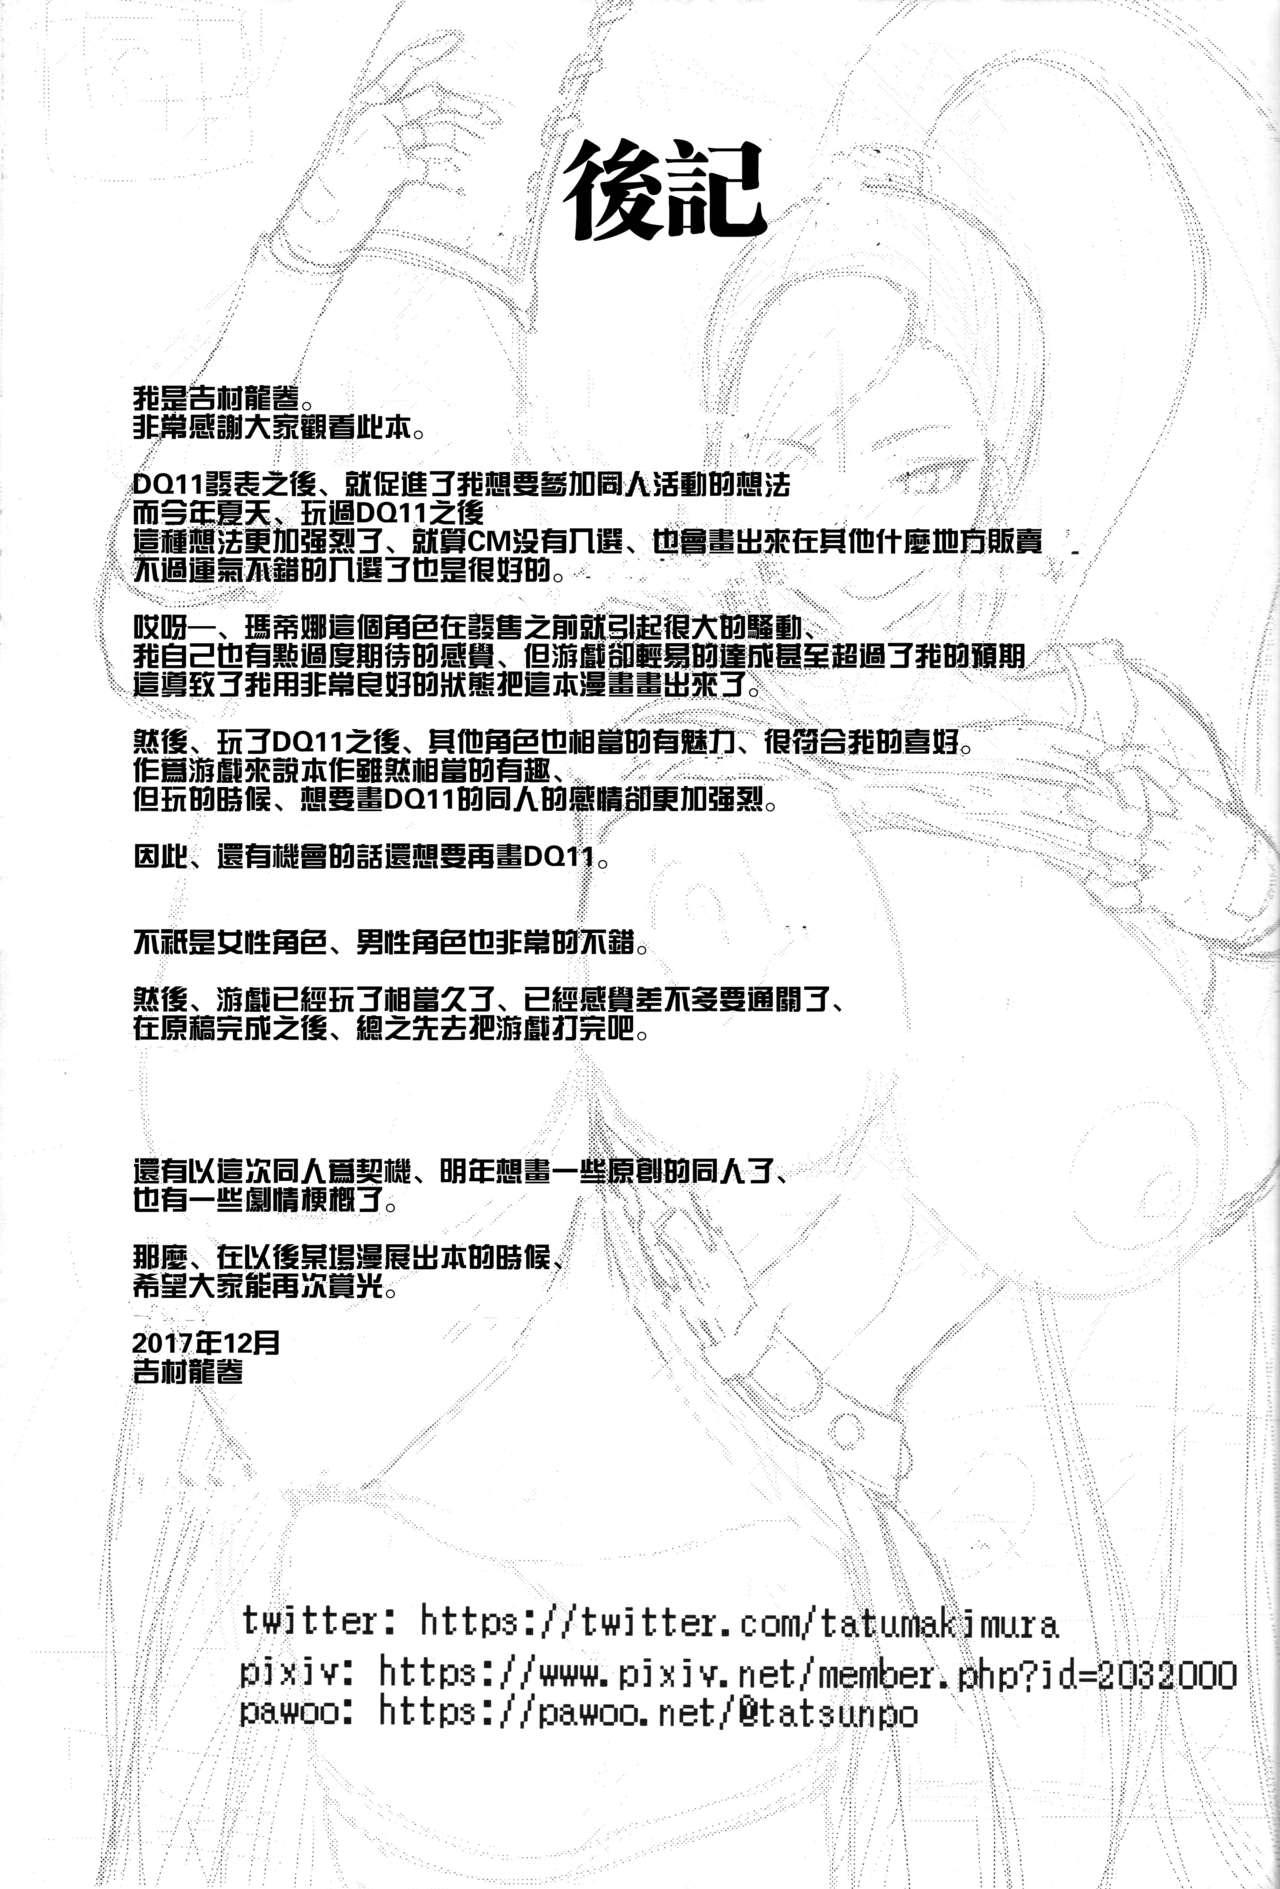 姫様の搾精スキル(C93) [Quick kick Lee (吉村竜巻)]  (ドラゴンクエストXI) [中国翻訳](27页)